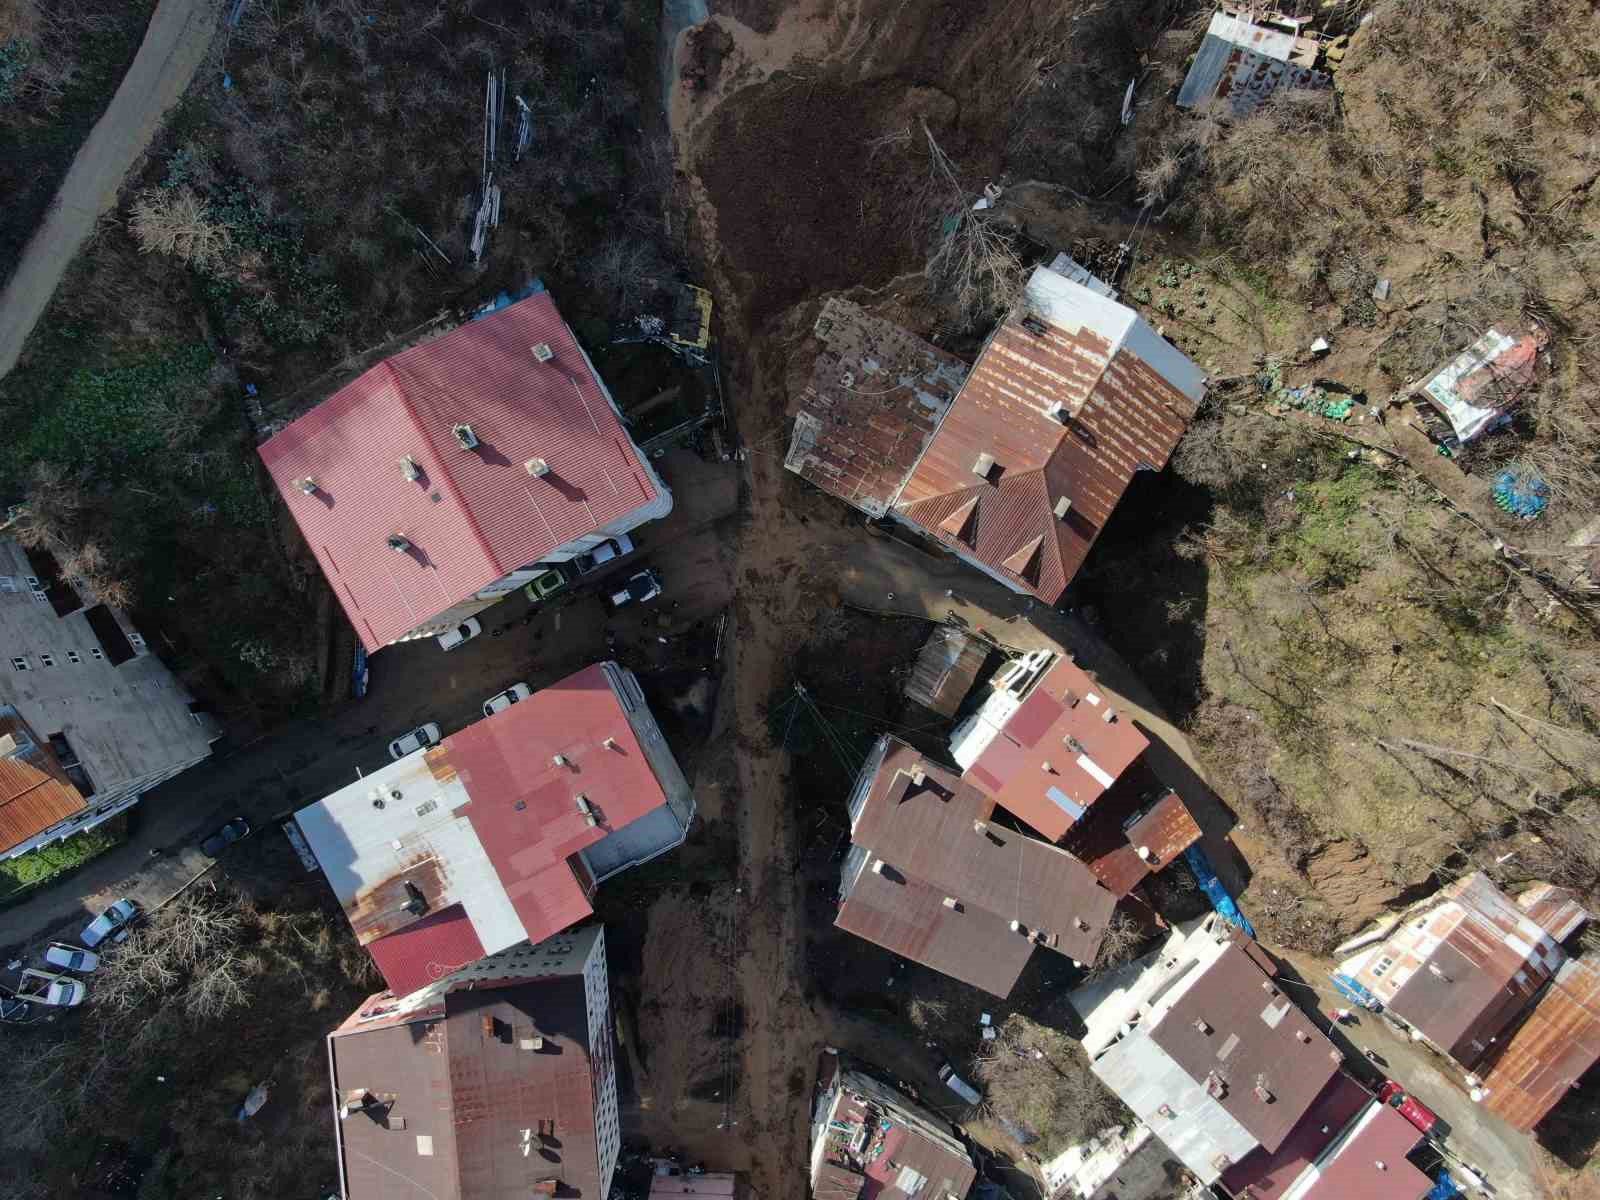 artvinde yamactan kopan topraklar evlerin icerisine doldu 10 bina zarar gordu 6 drjZdIFO